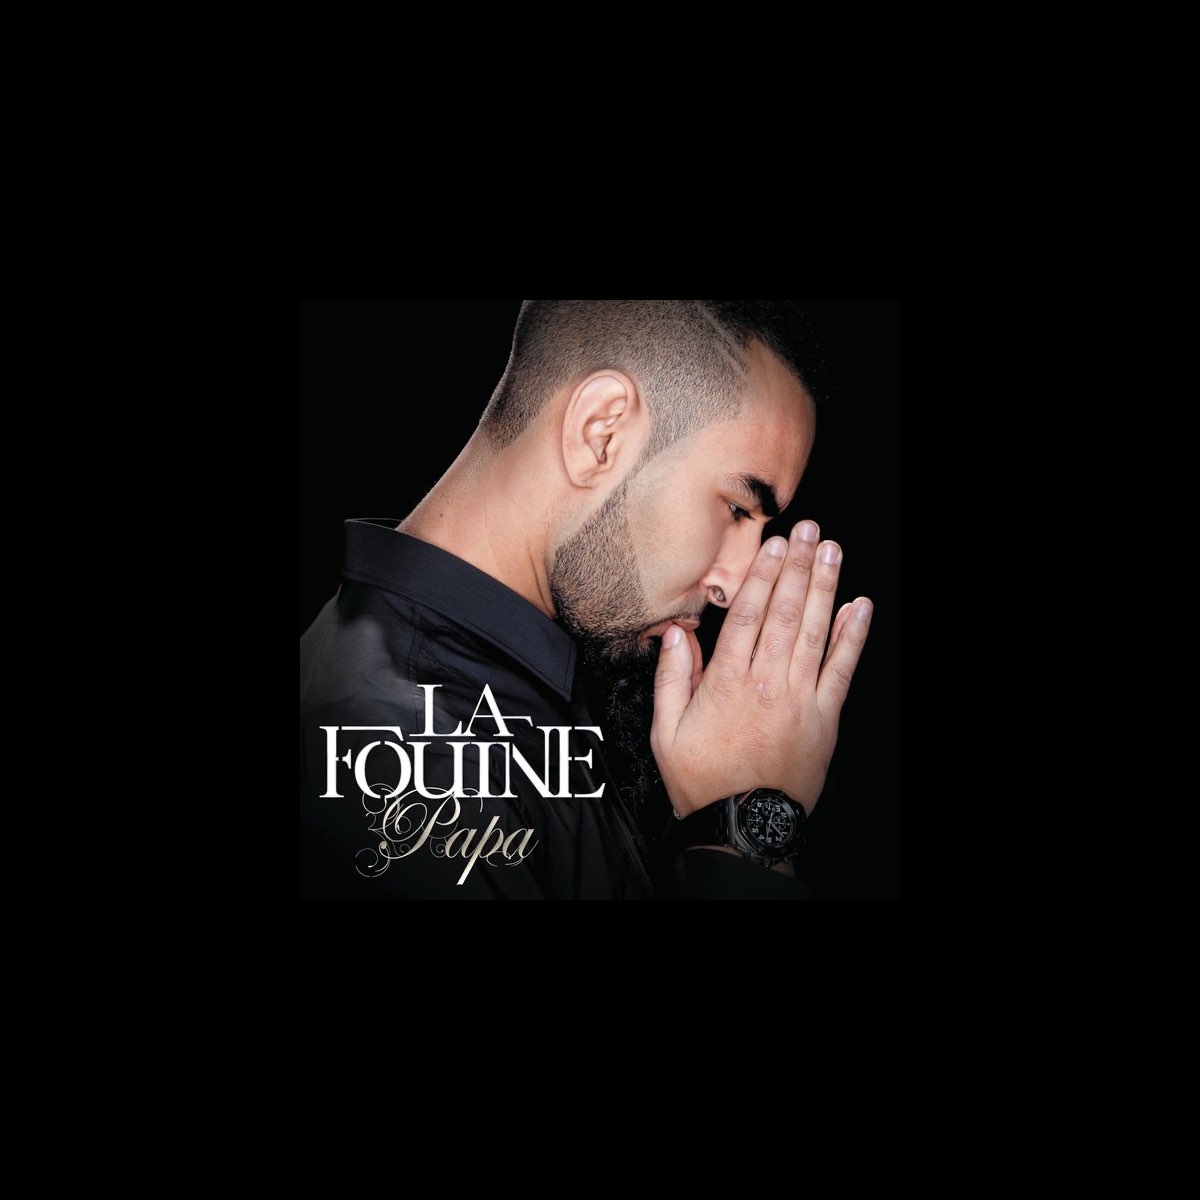 Papa - Single by La Fouine on Apple Music